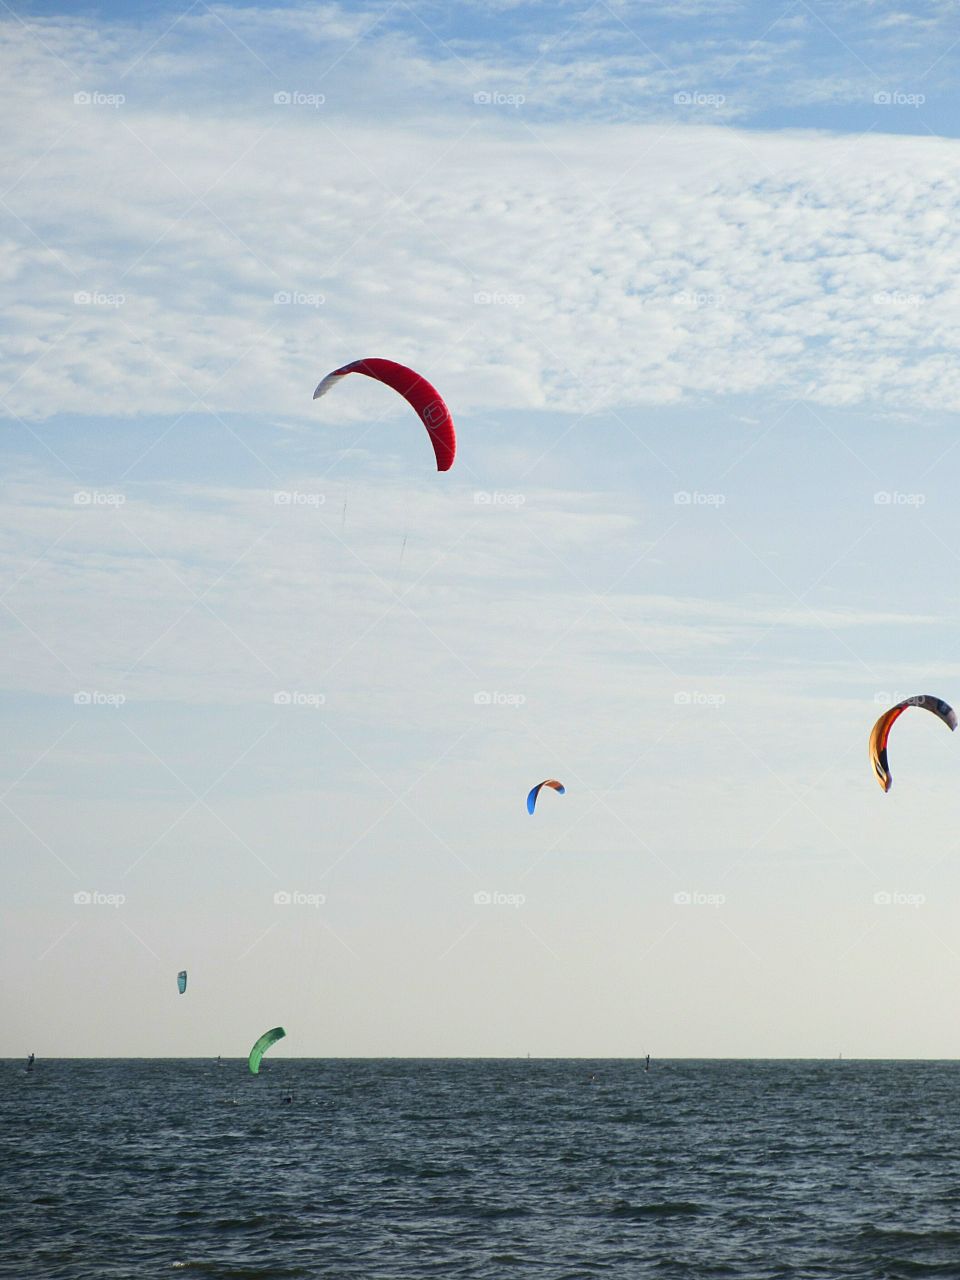 Kites urging on Tampa Bay, Florida